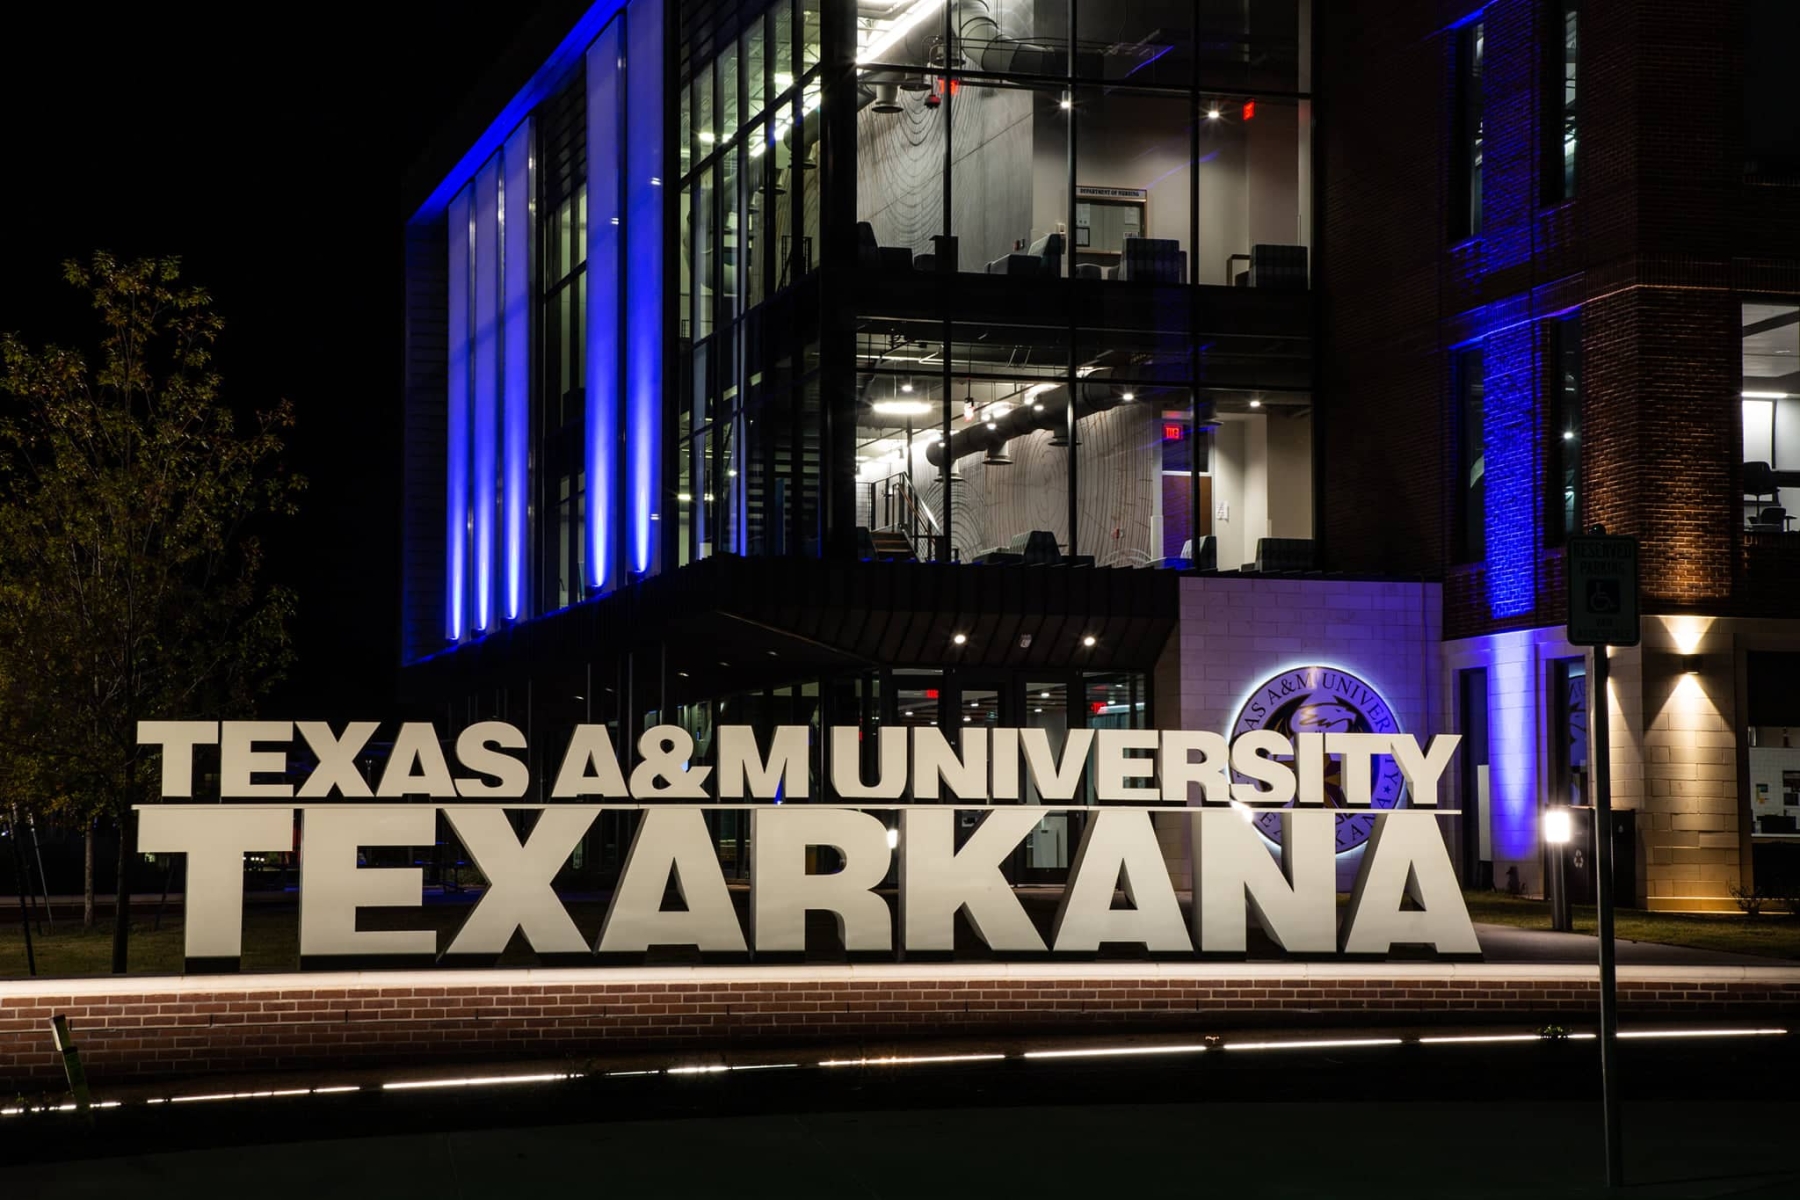 Texas A&M University Texarkana thành lập vào năm 1971